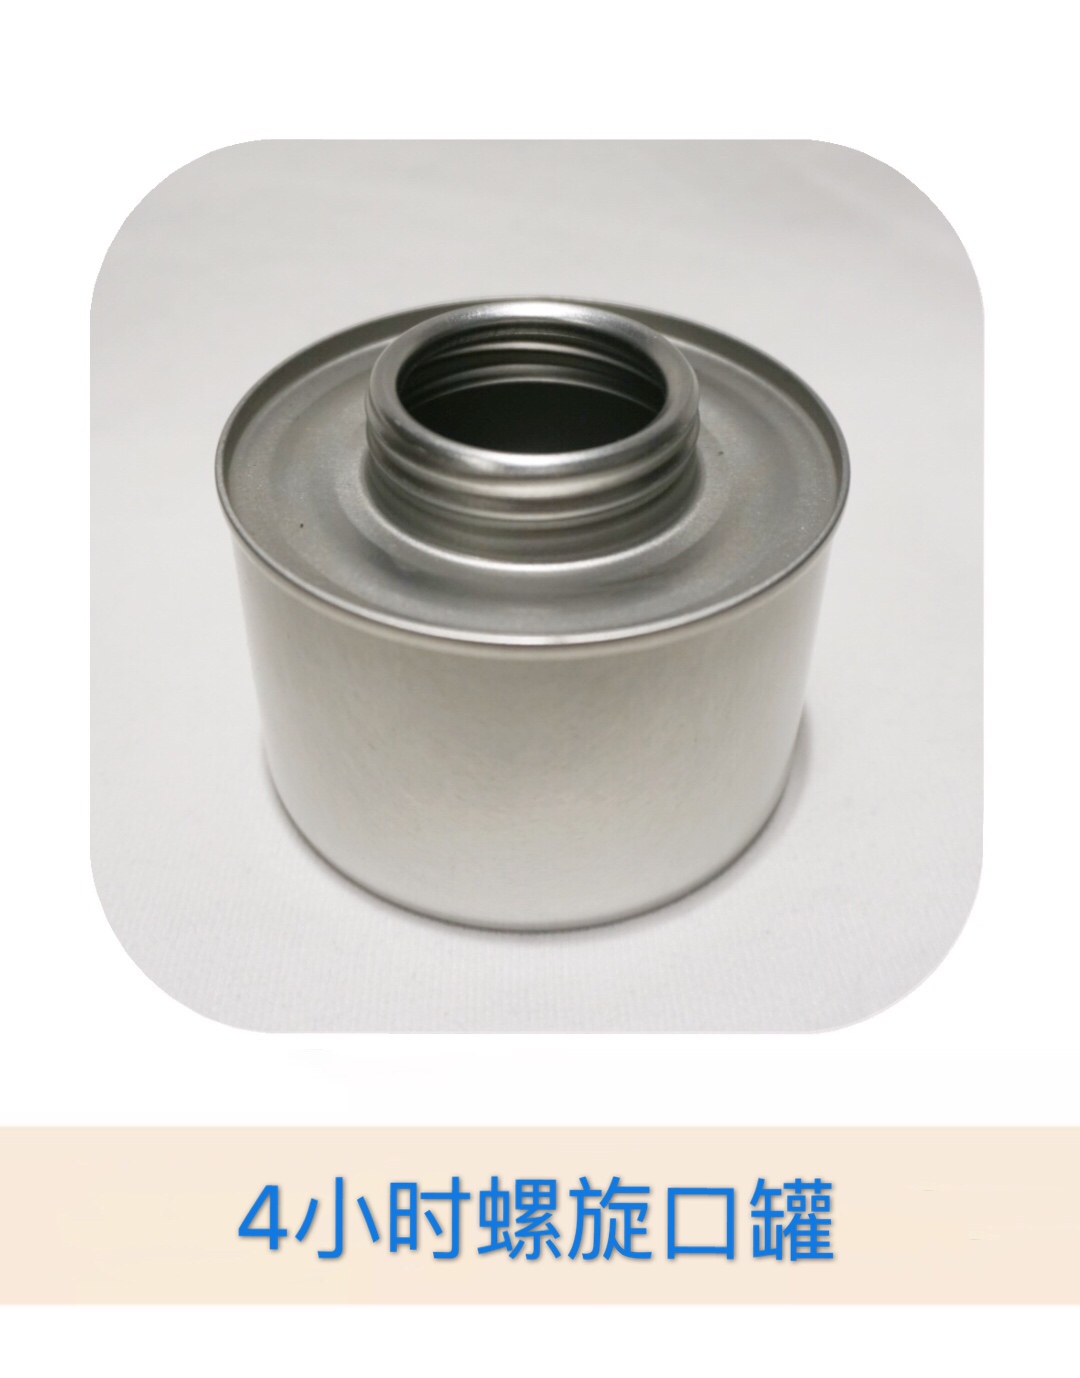 马口铁制品 环保油罐 可定制 固体 液体酒精罐1